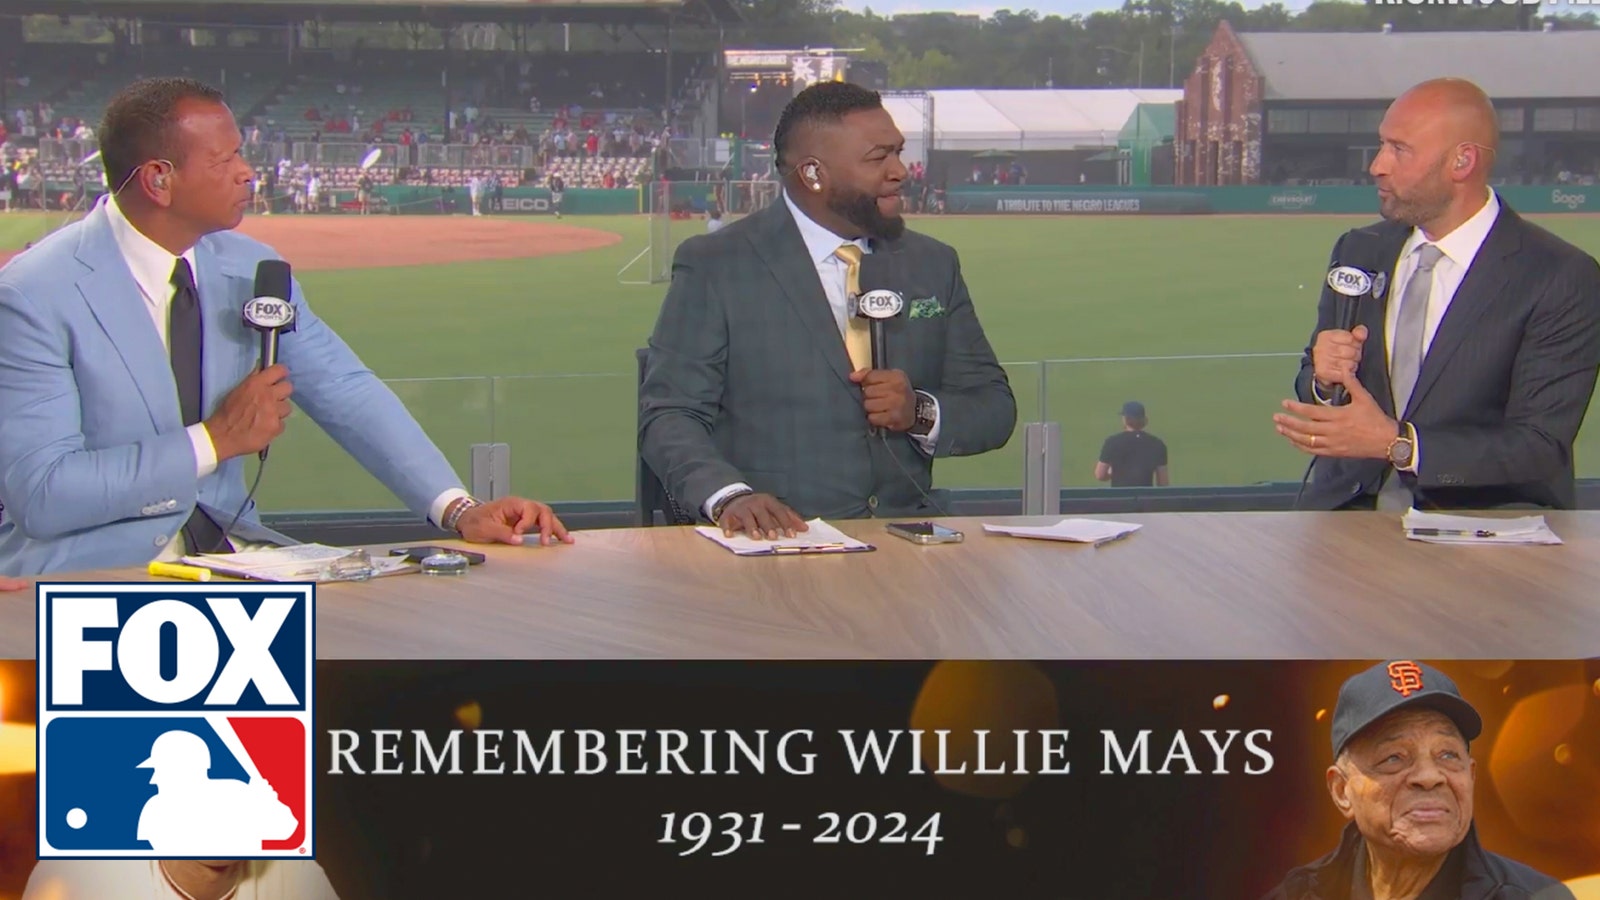 Derek Jeter & Álex Rodríguez pay tribute to Willie Mays’ legacy